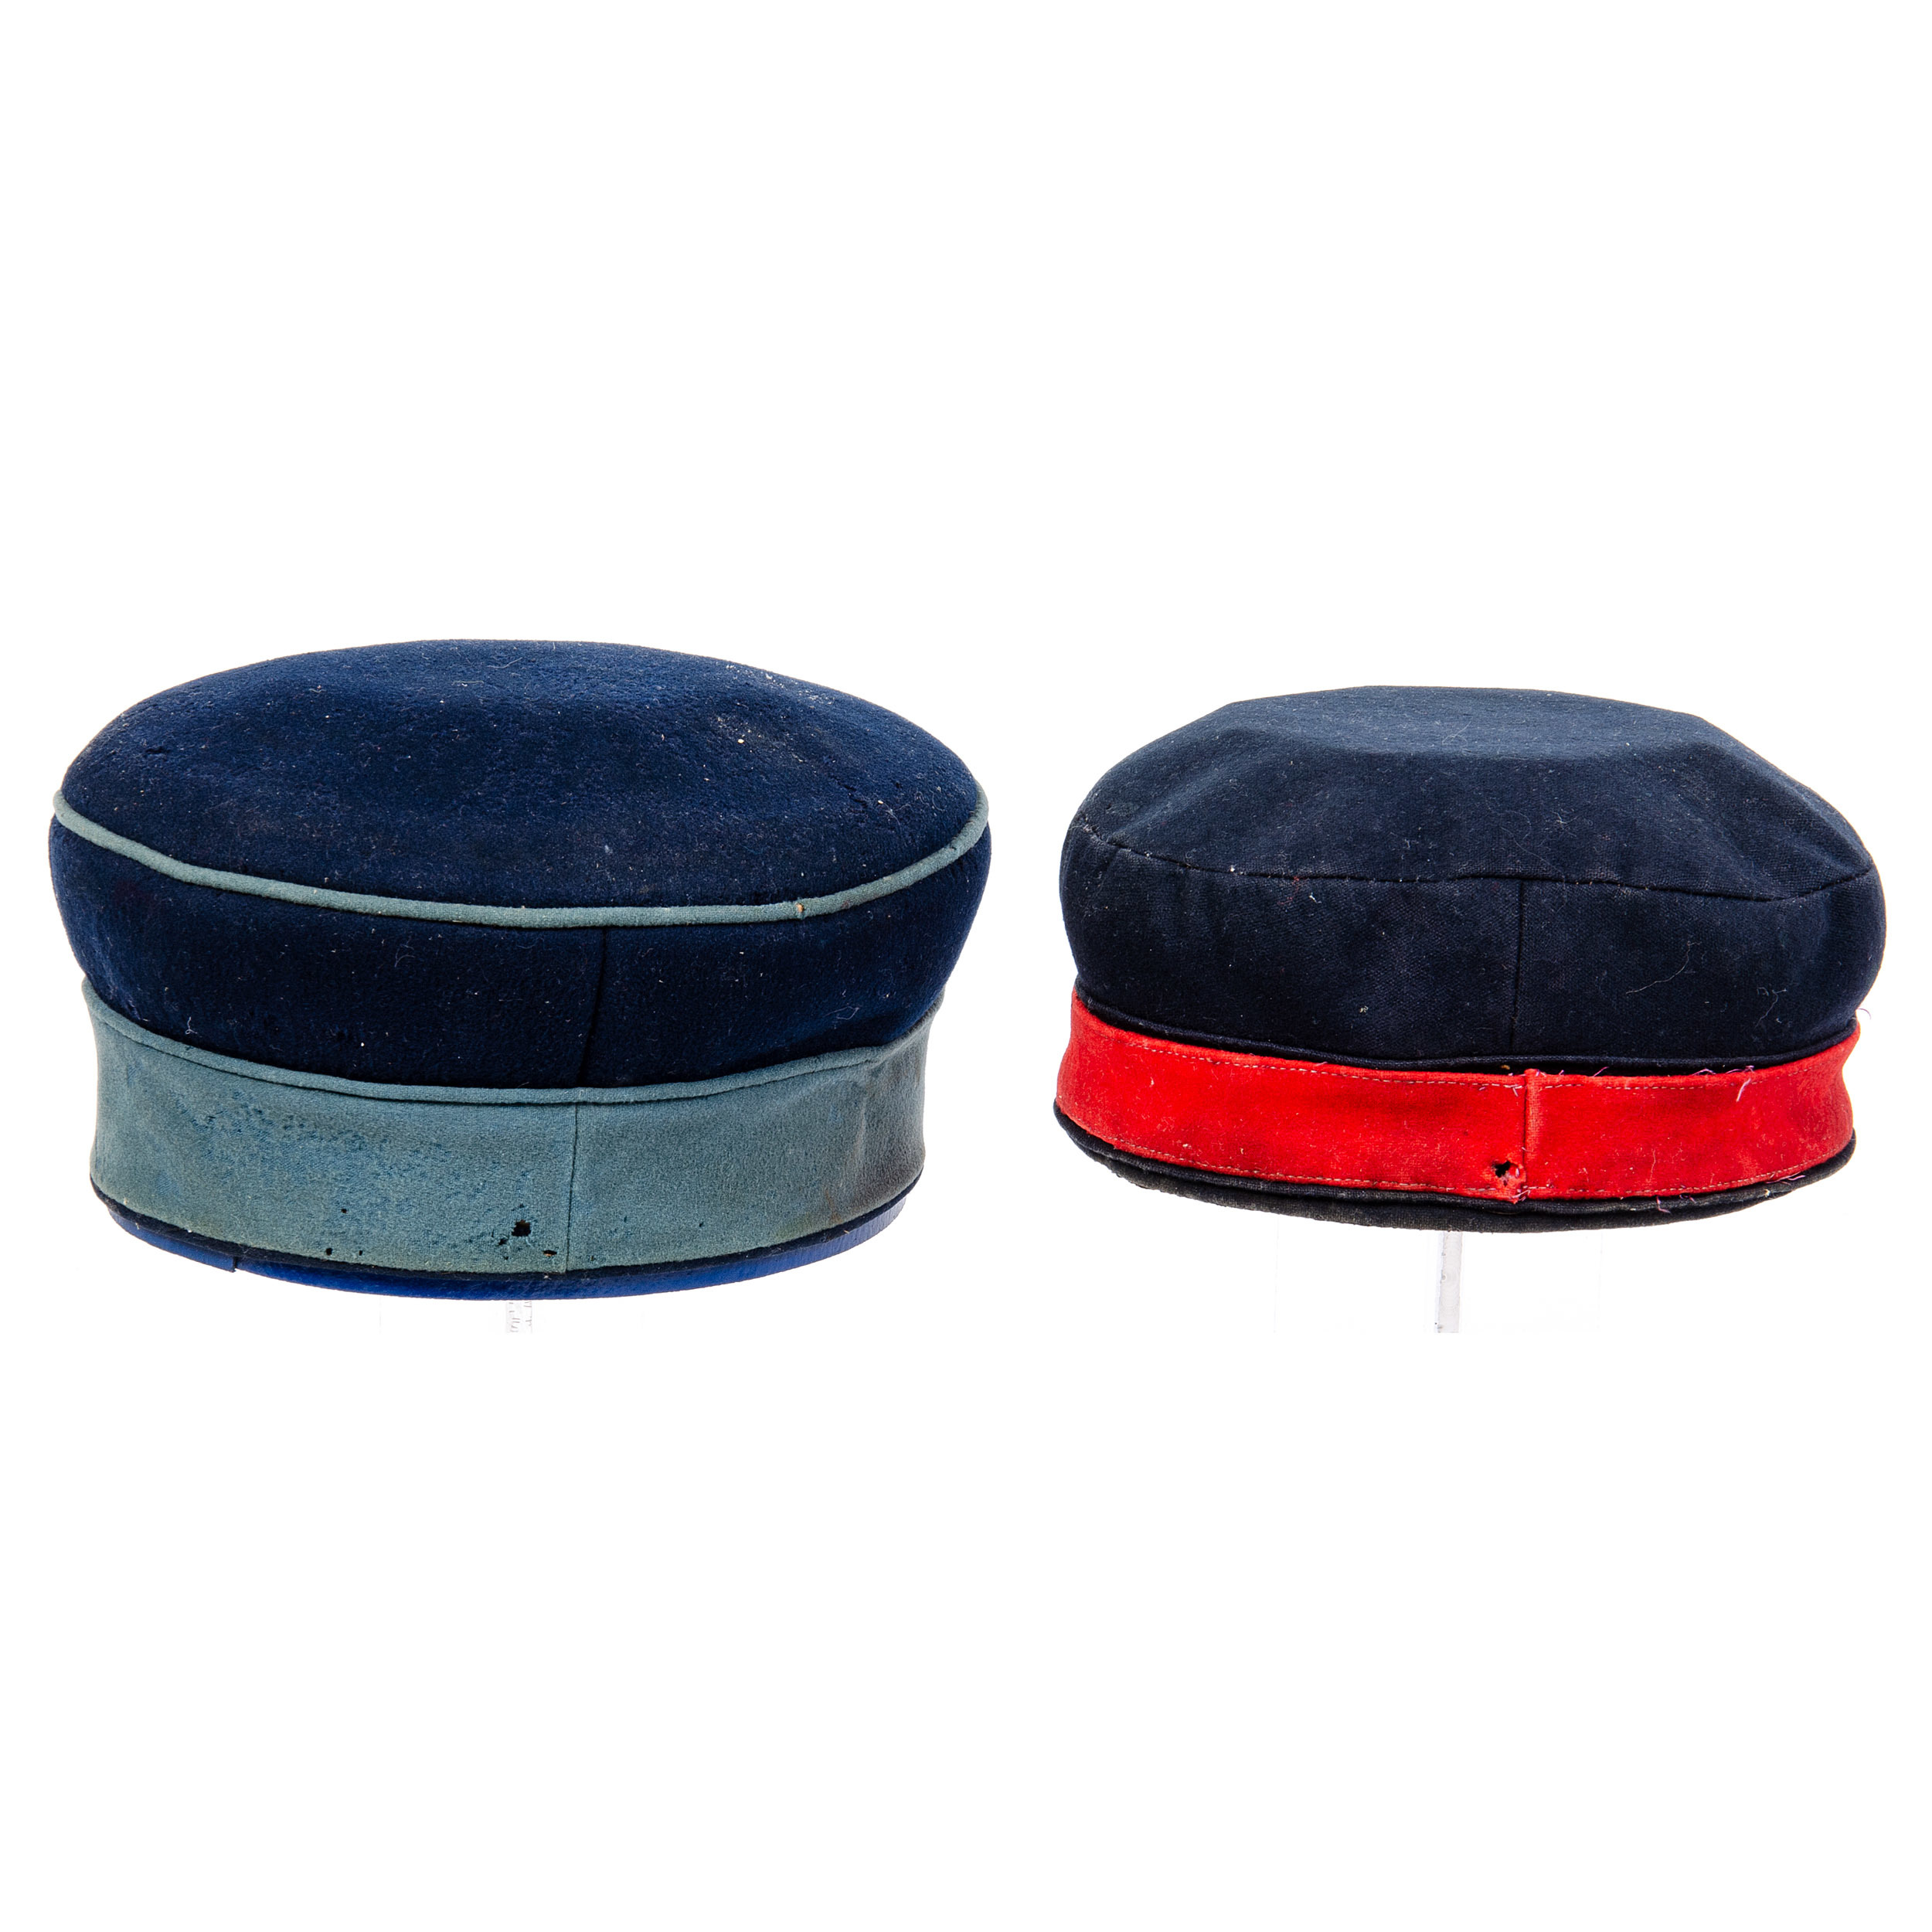 single pile cap design example